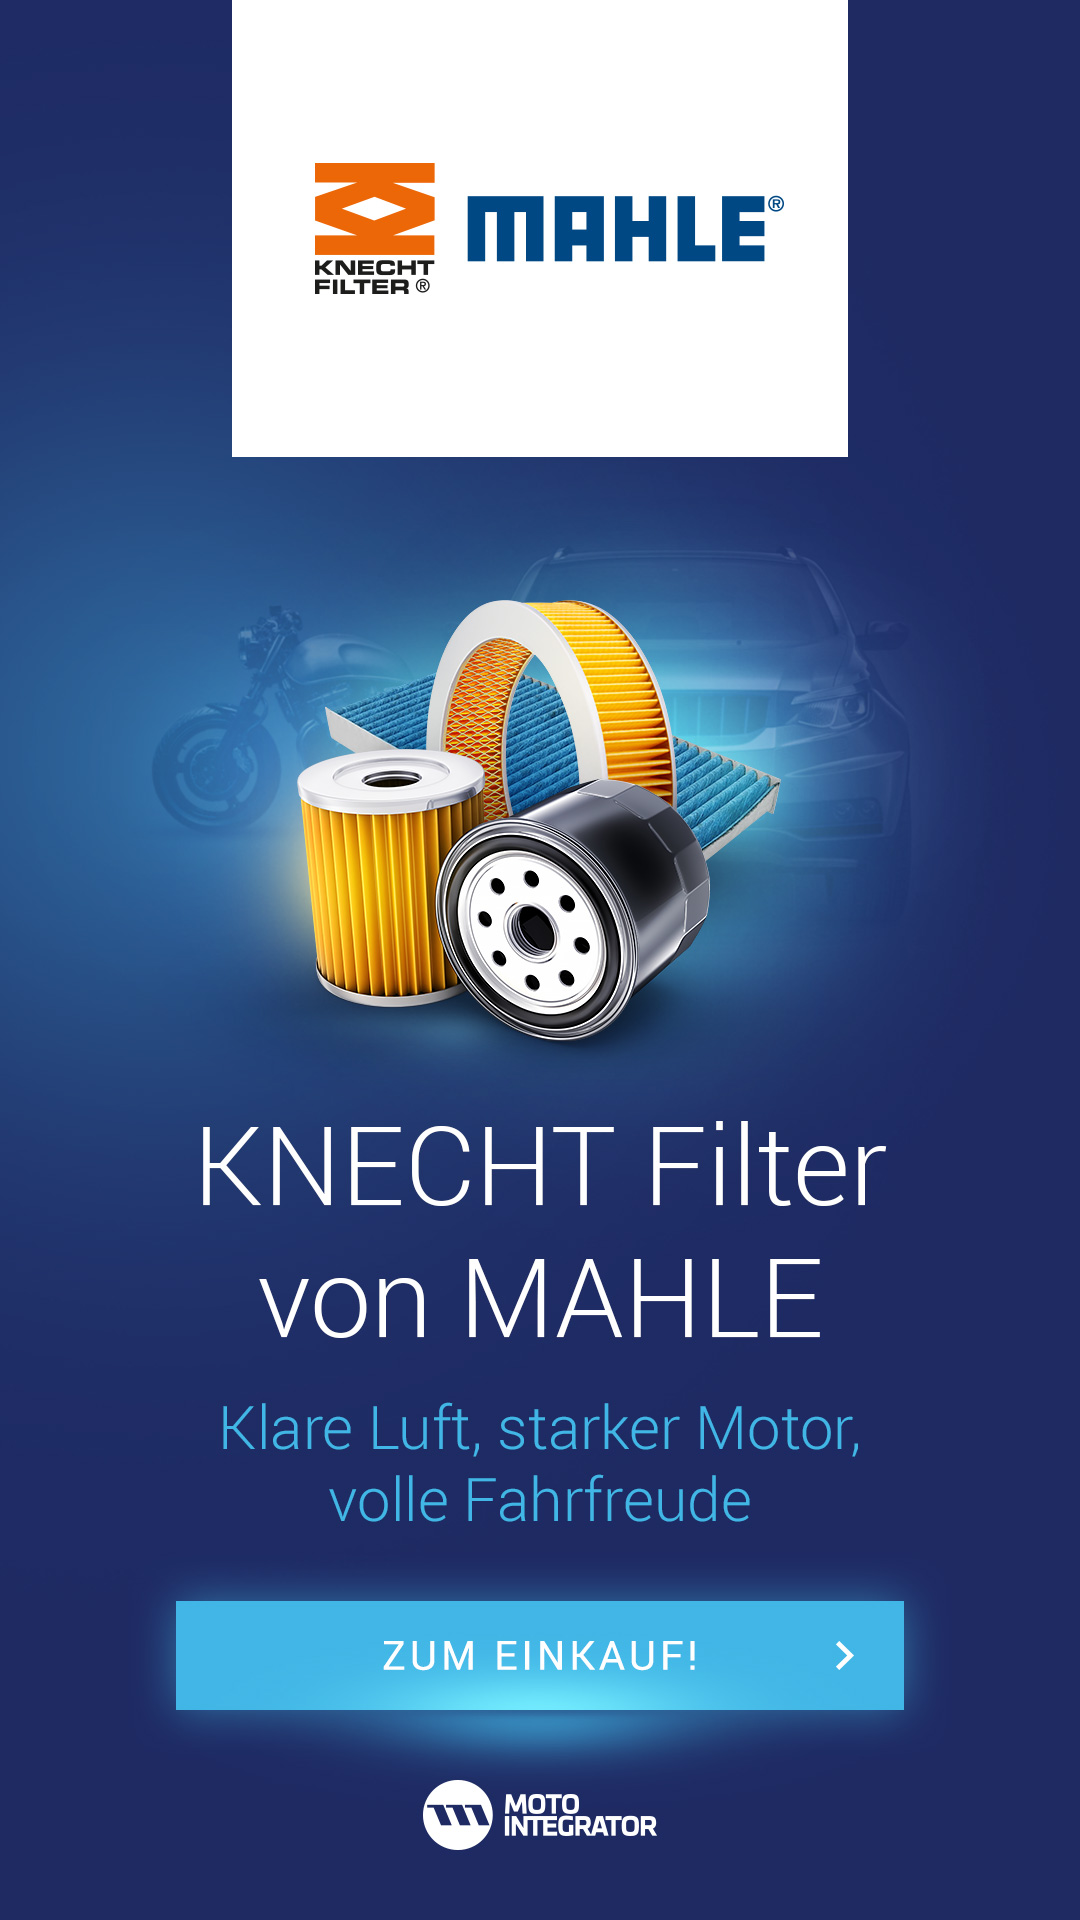 Knecht-Filter